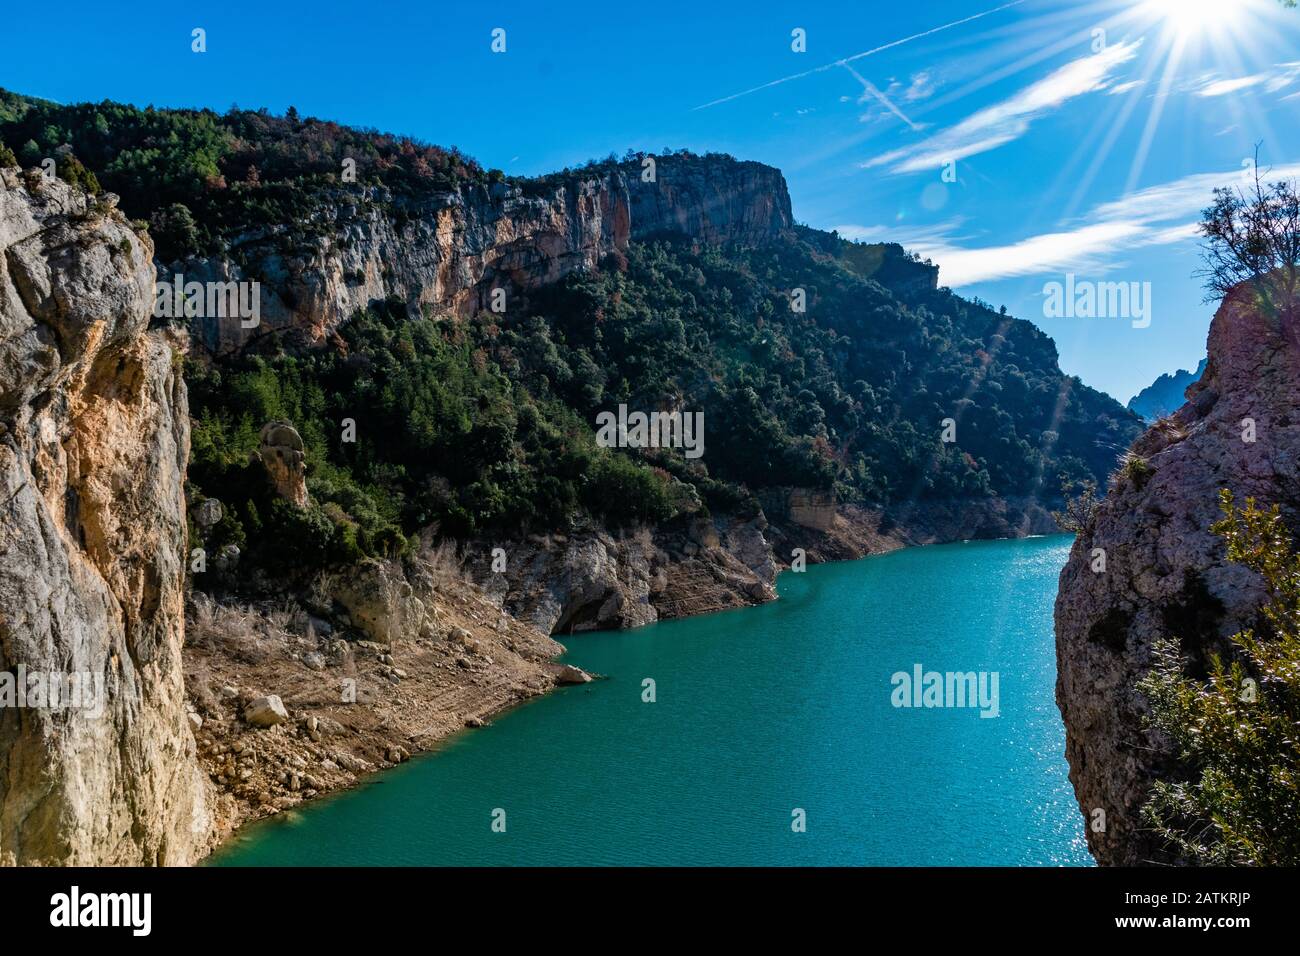 Vue sur la rivière avec eau turquoise et canyon rocheux de Congost de Mont-rebei en Espagne Banque D'Images